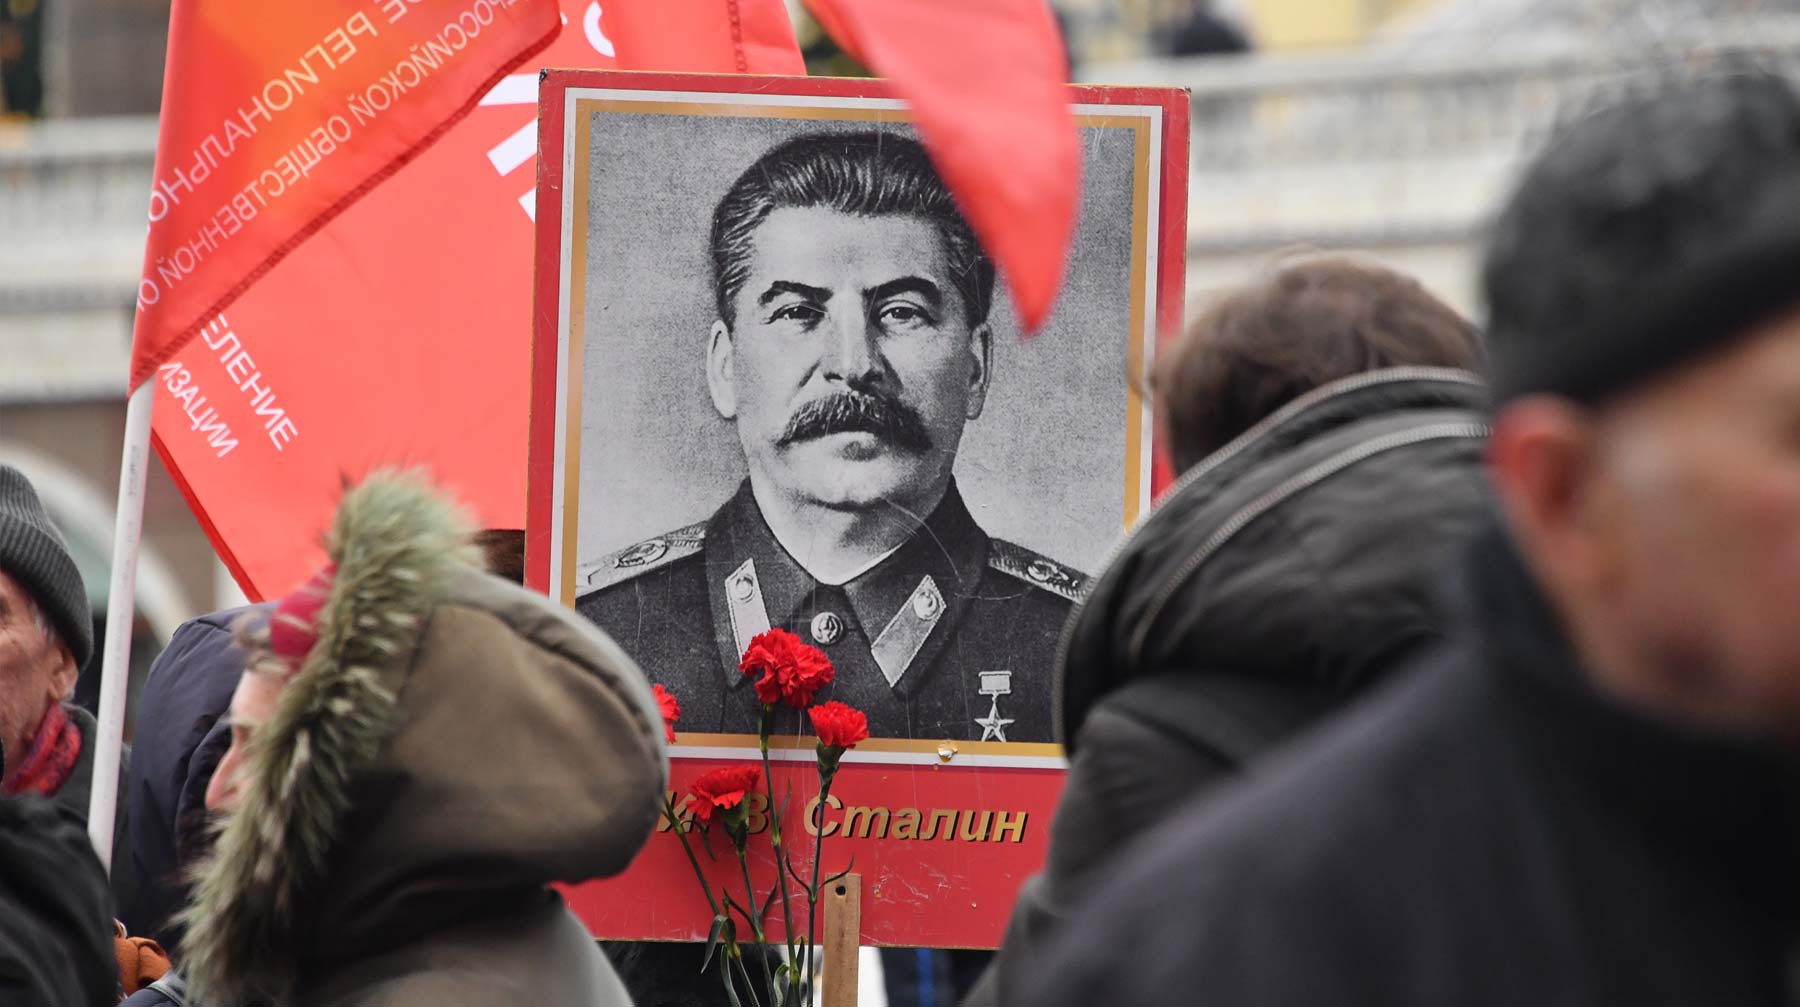 Dailystorm - Большинство — за Сталина: впервые в XXI веке россияне положительно оценили вождя